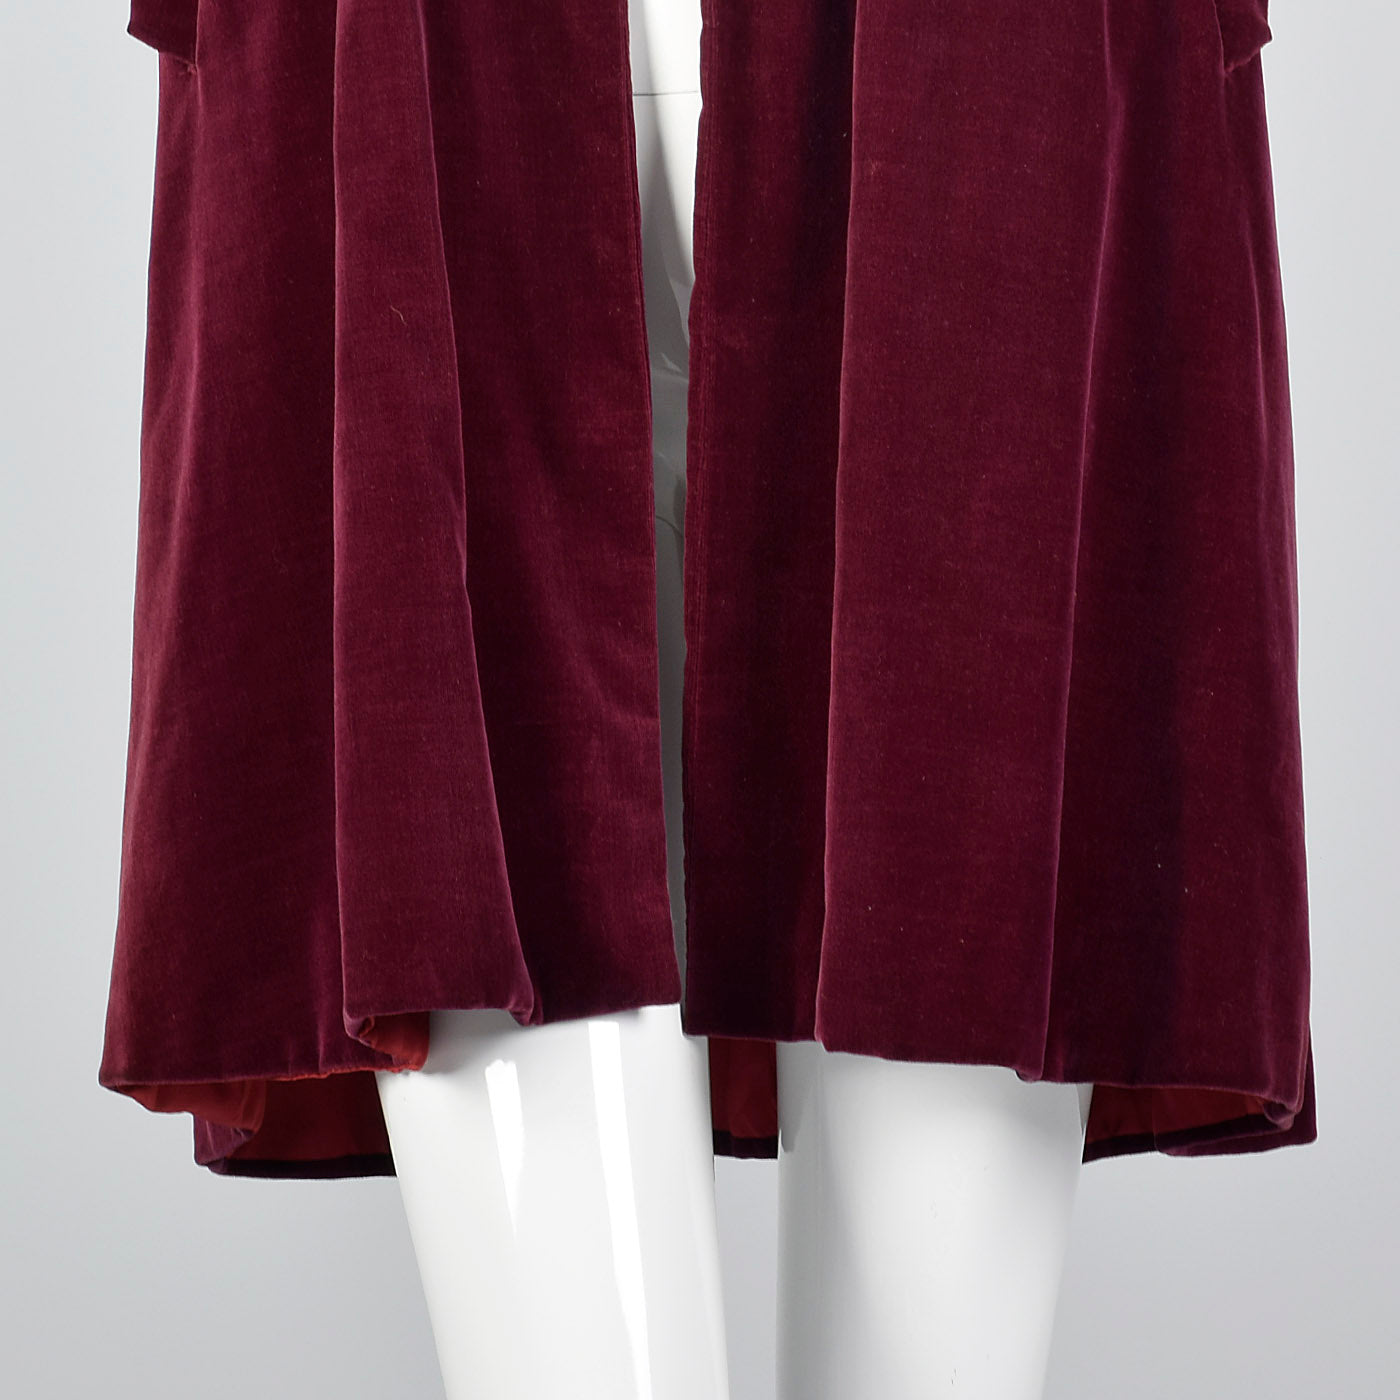 1940s Burgundy Velvet Coat with Mutton Sleeves